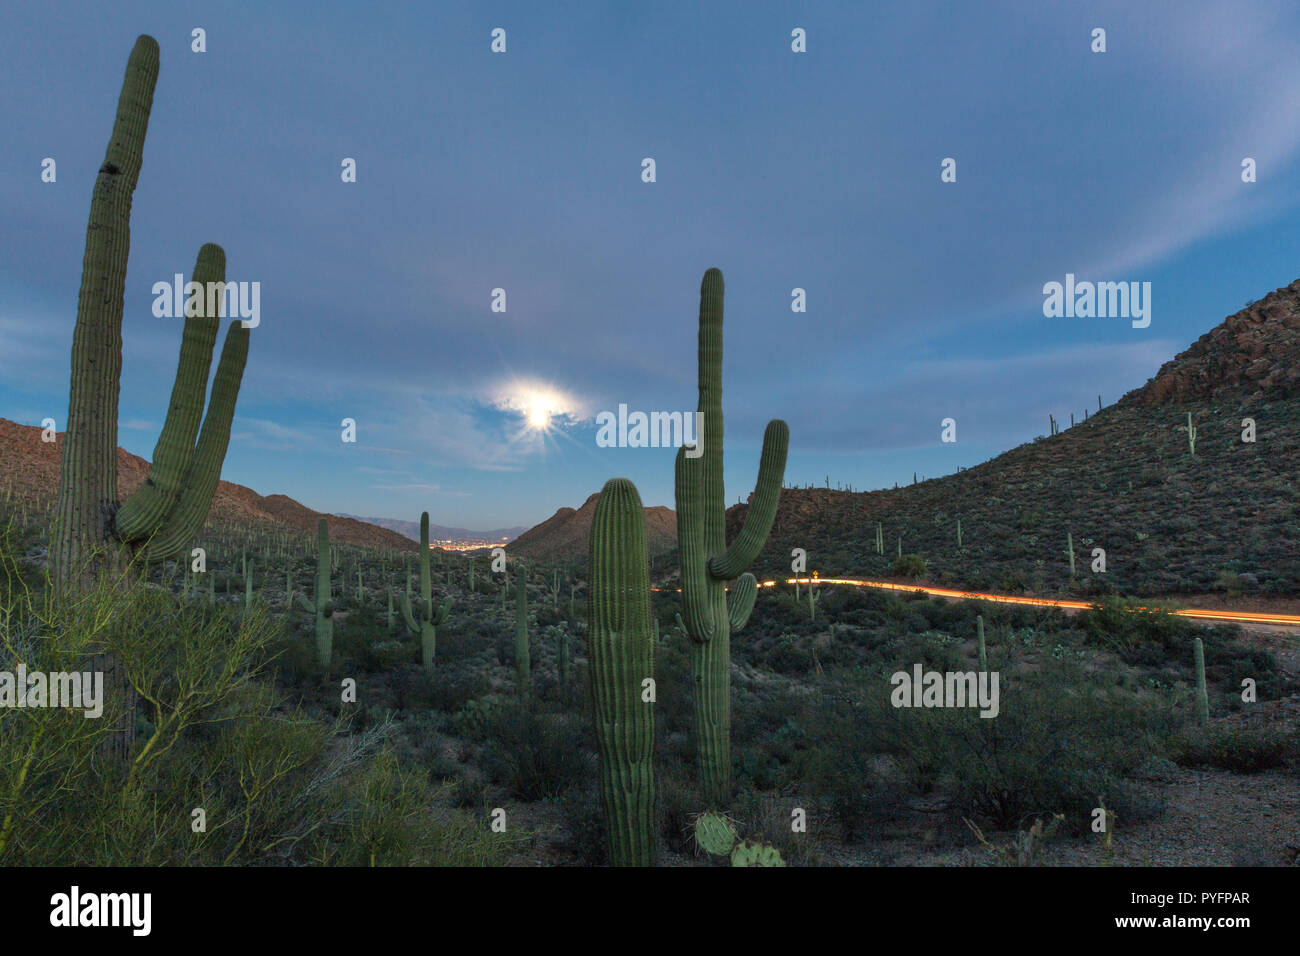 Cactus gigante saguaro, Carnegiea gigantea, bajo la luna llena en las puertas de embarque pasan en las montañas de Tucson, Tucson, Arizona, EE.UU. Foto de stock